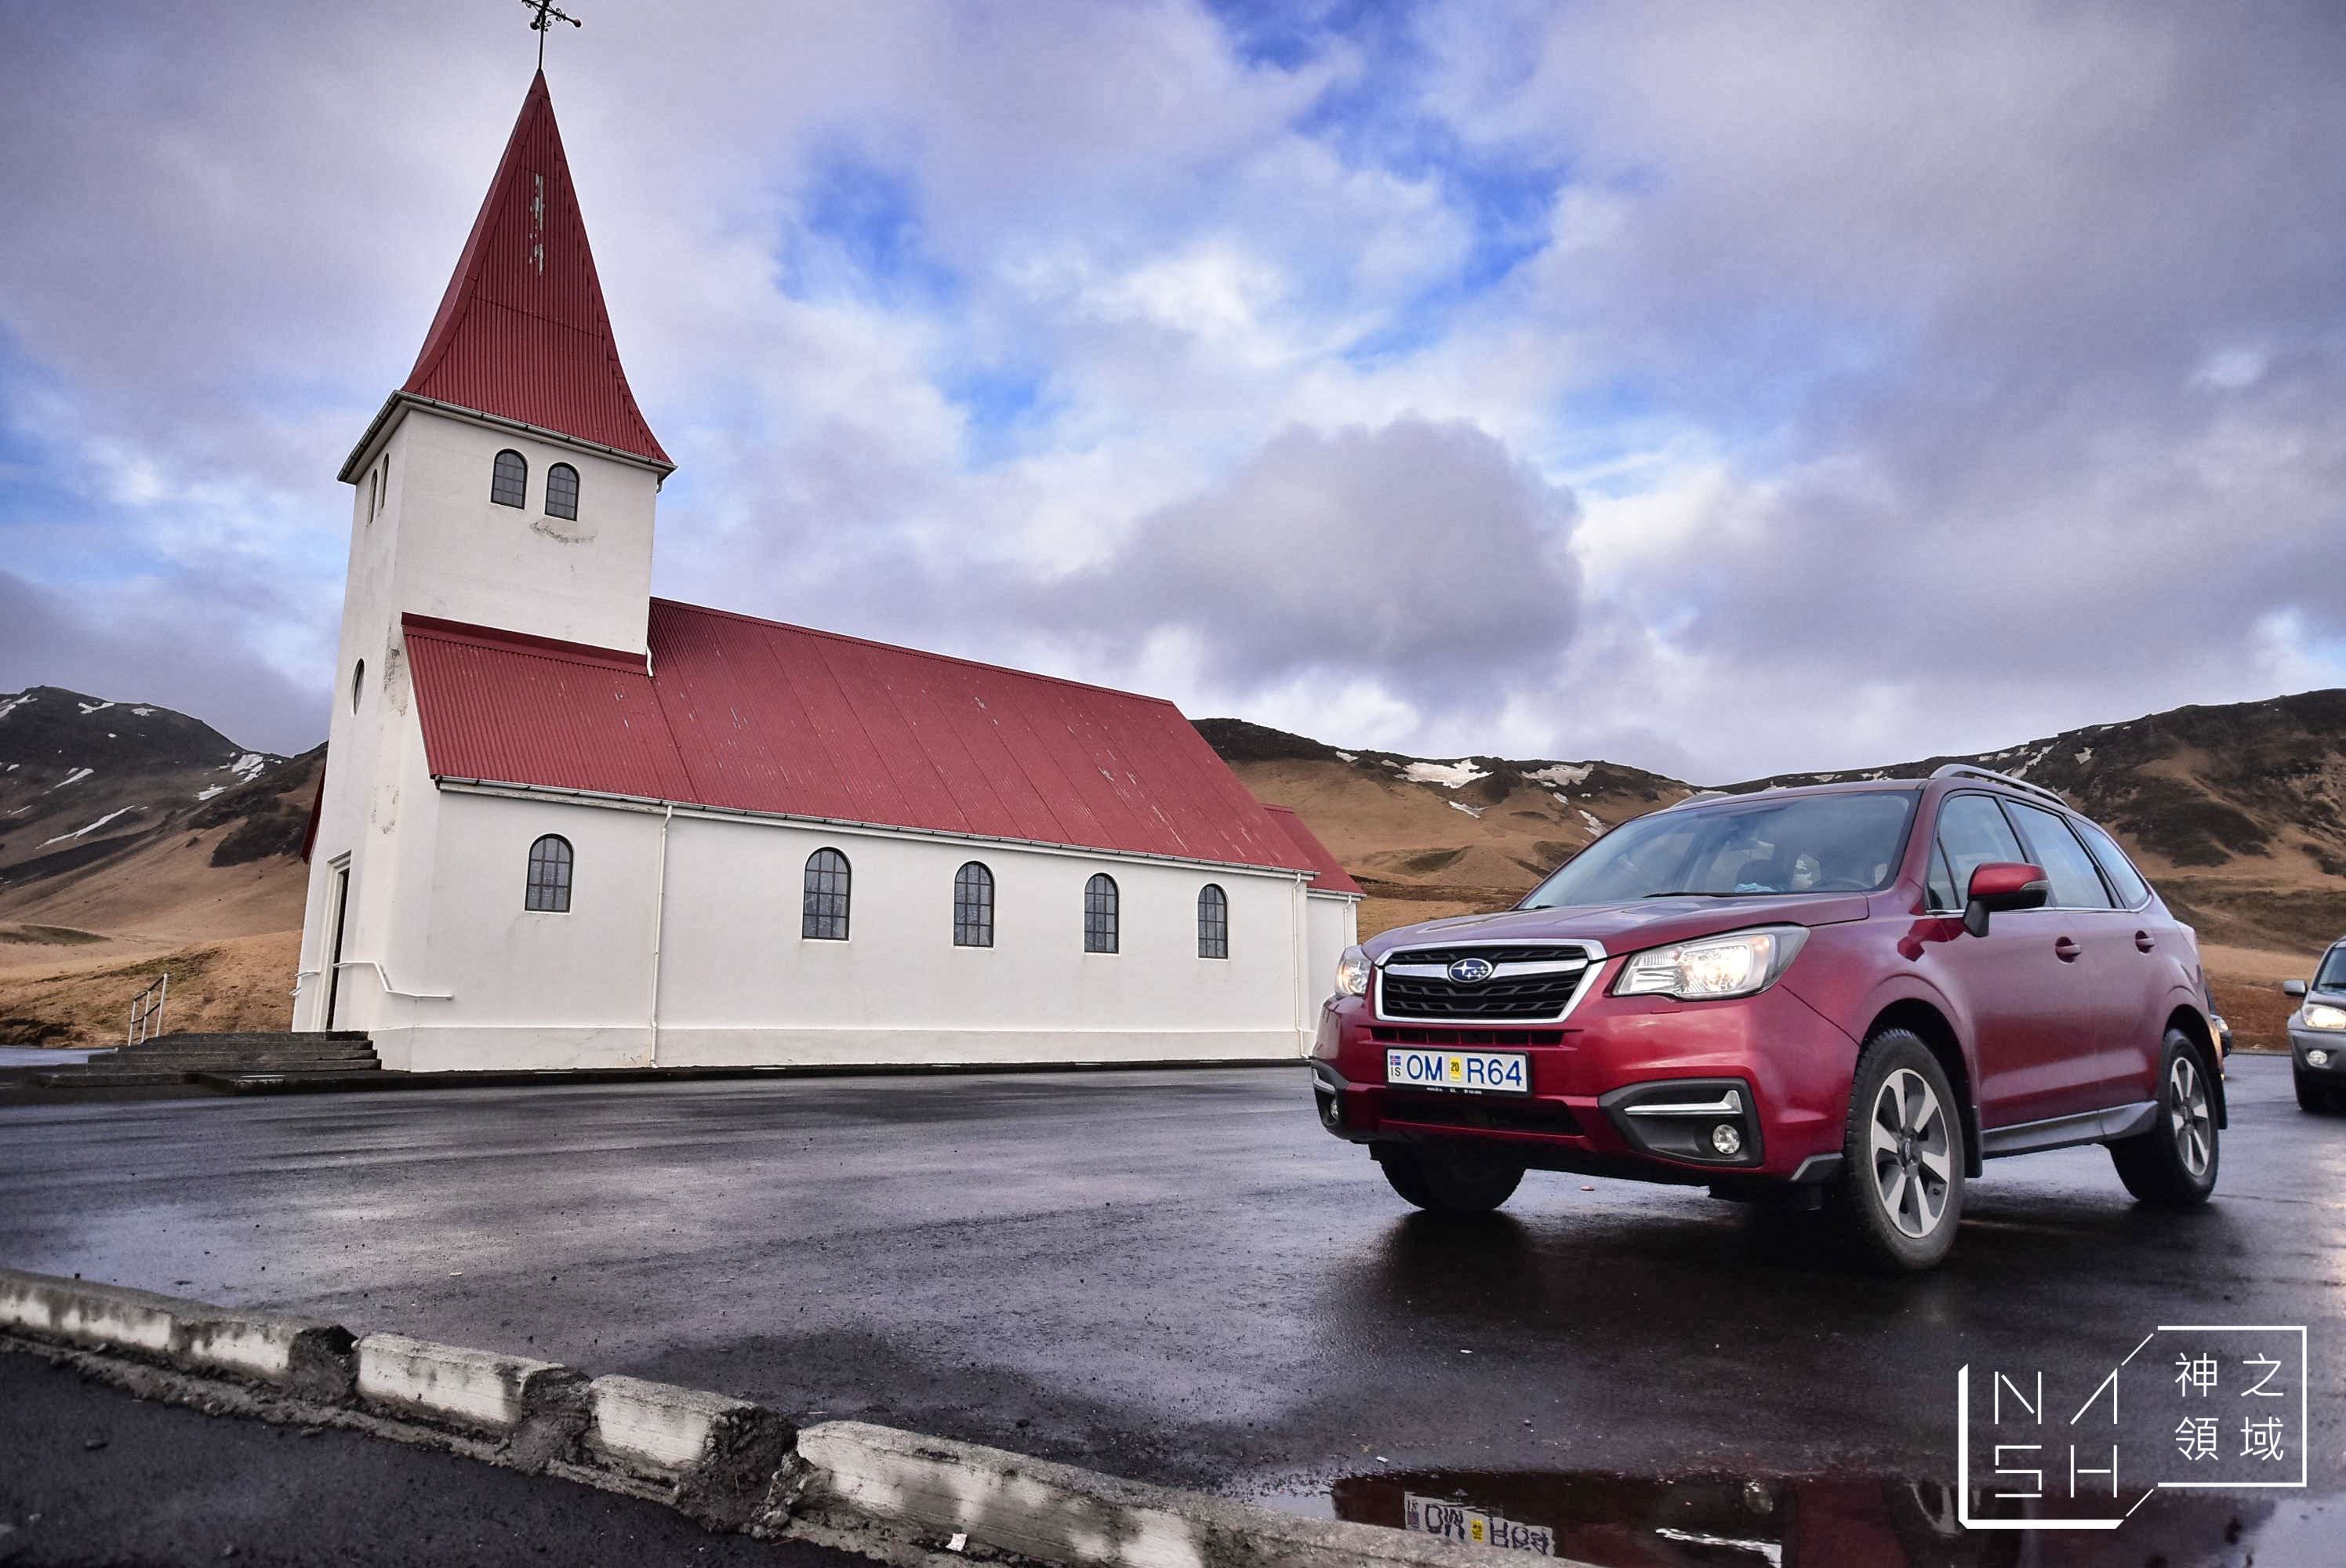 冰島自由行環島景點推薦,冰島自助景點推薦,維克教堂,vik church,Vik i Myrdal Church @Nash，神之領域